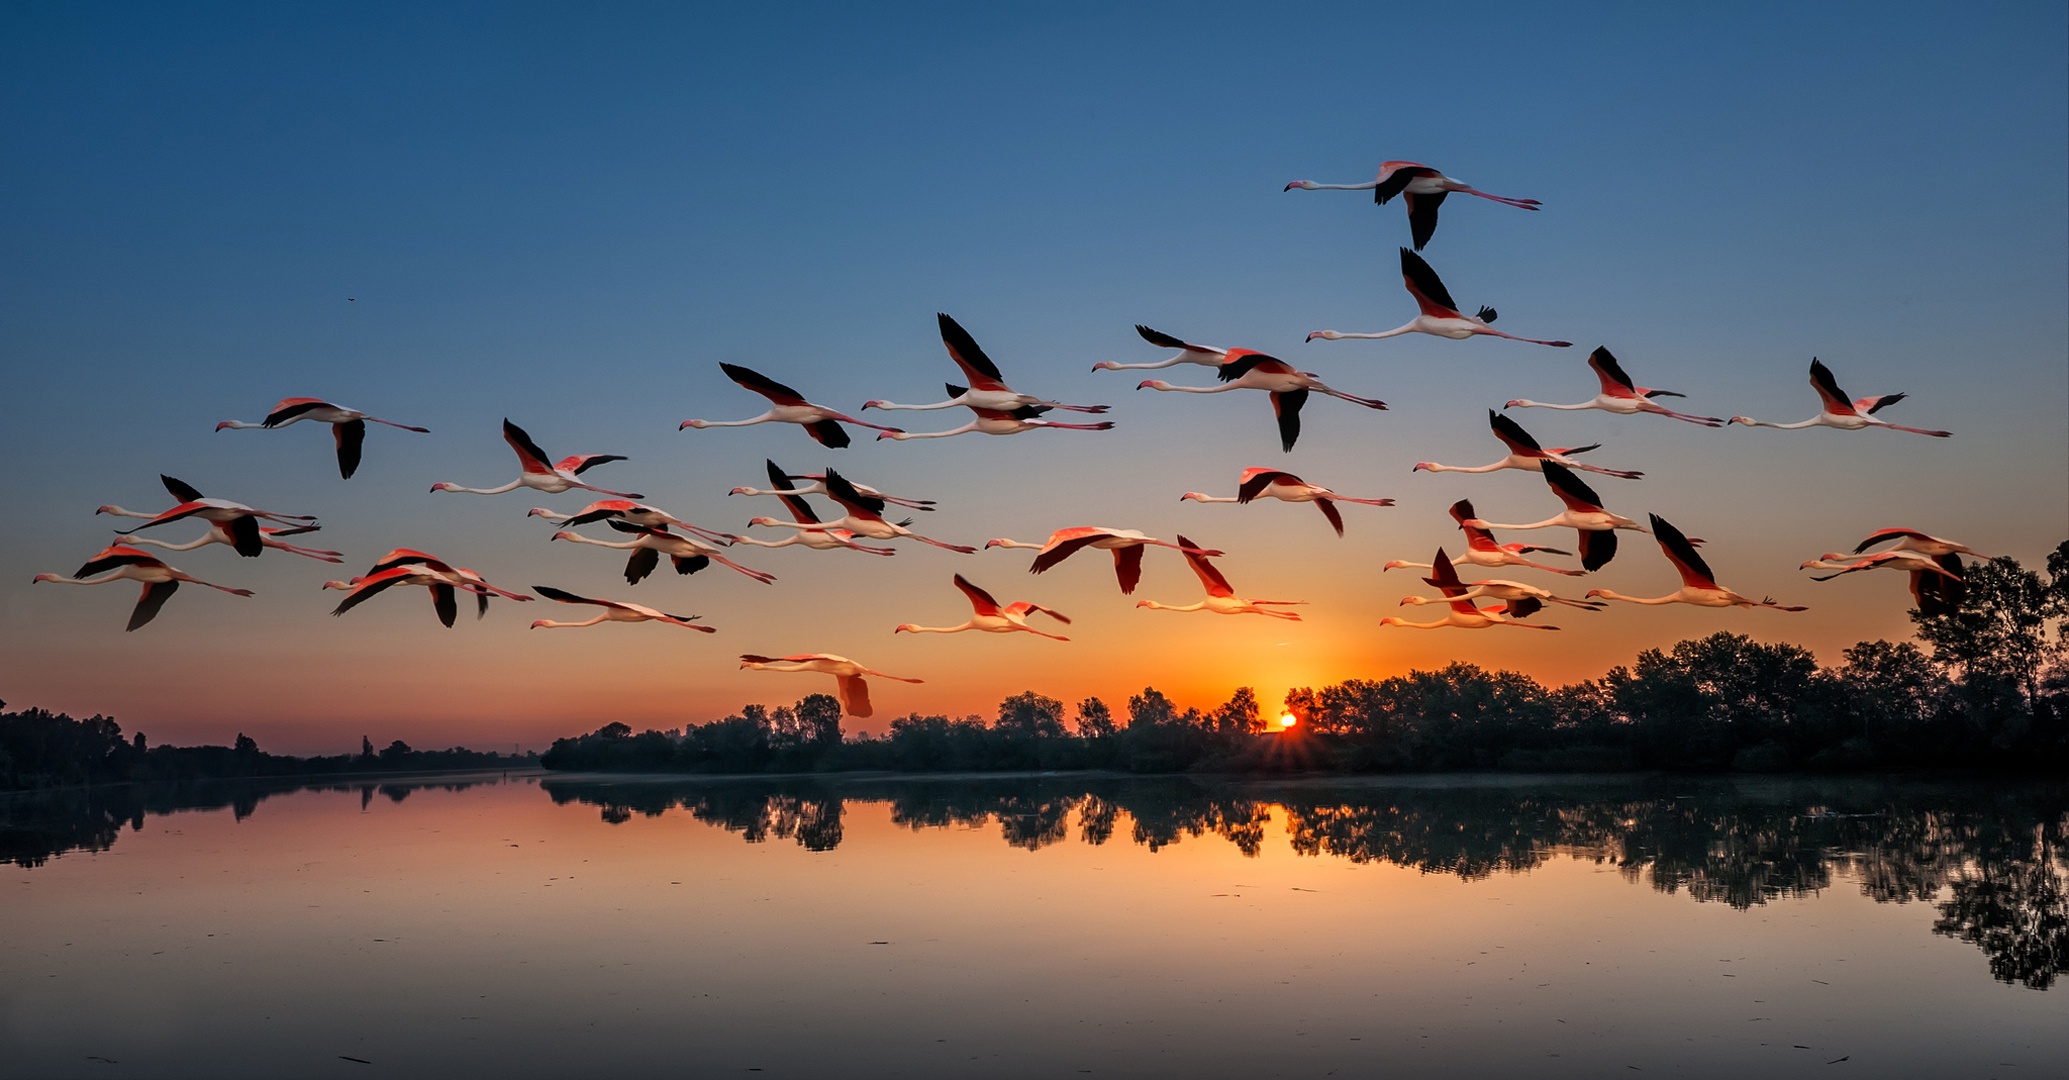 flamingo, animal, bird, flock of birds, lake, sunset, birds